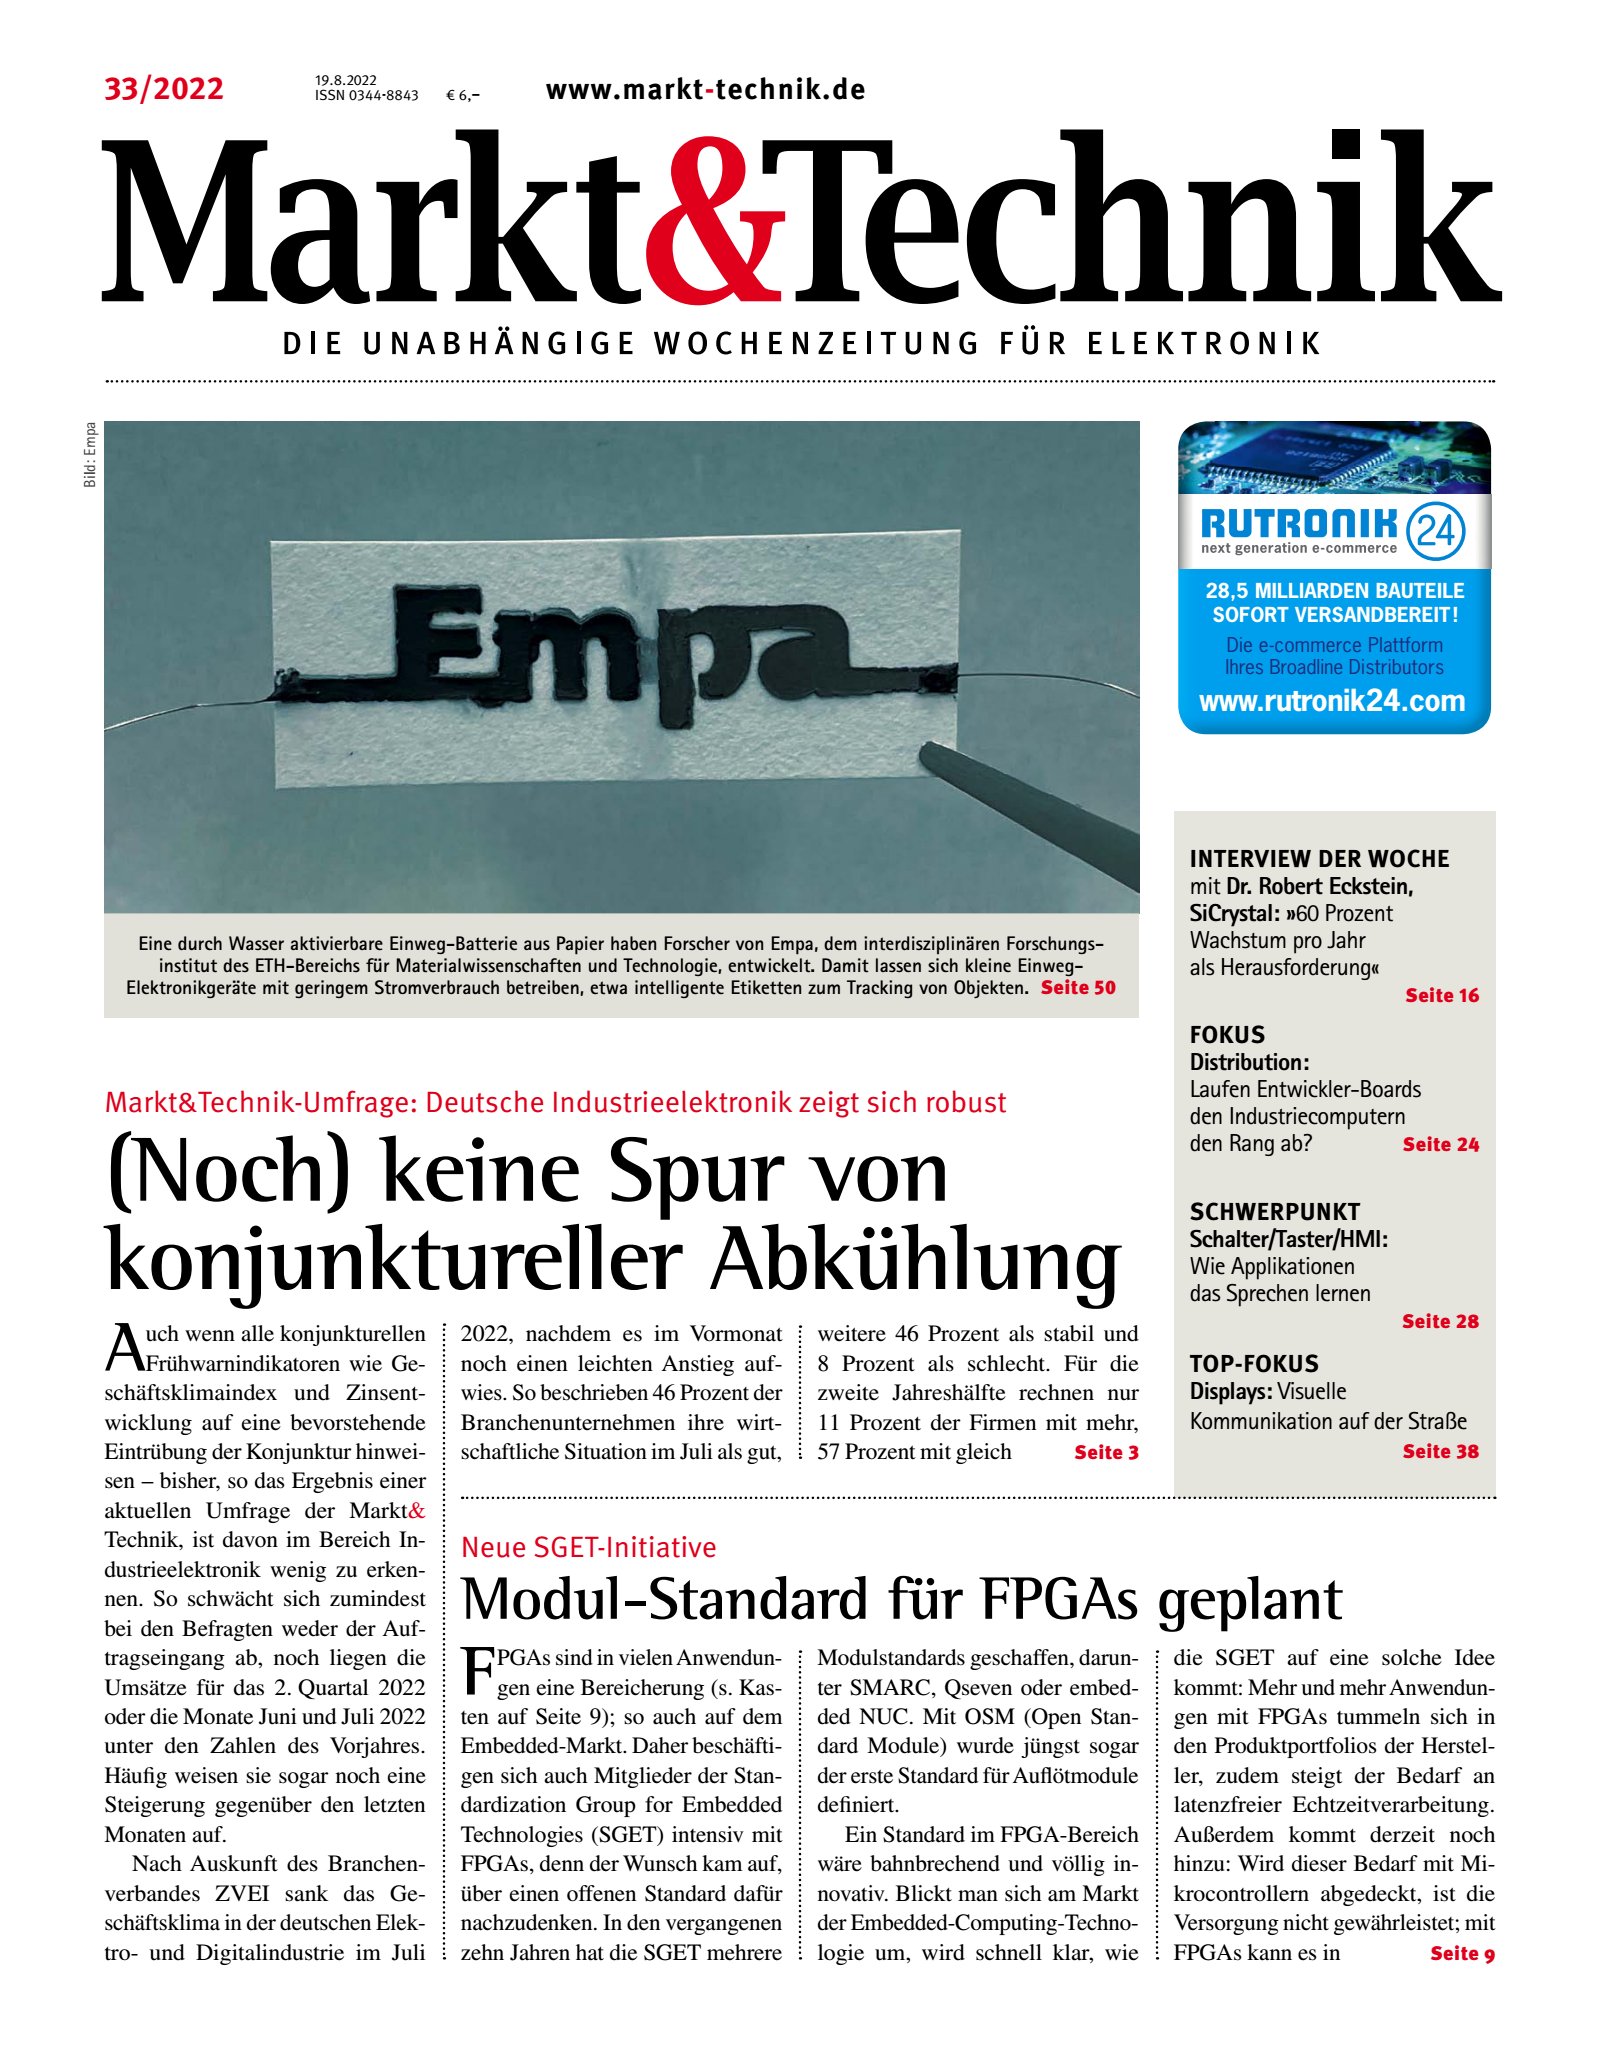 Markt&Technik 33/2022 Digital